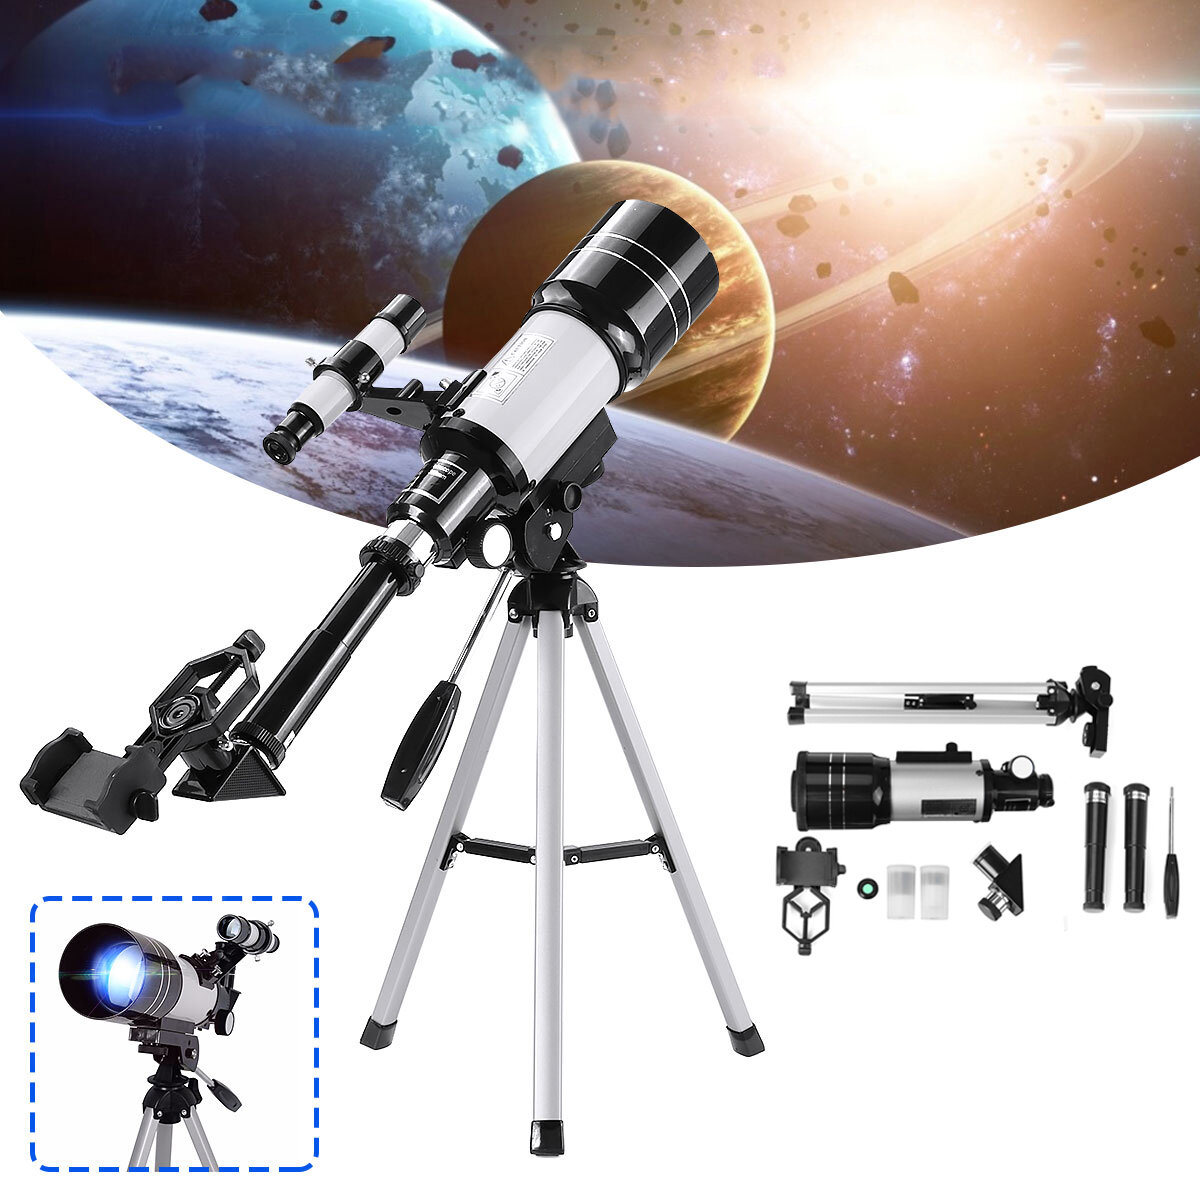 150X астрономический телескоп 70 мм рефрактор четкое изображение монокуляр с большим увеличением с адаптером для телефона Штатив